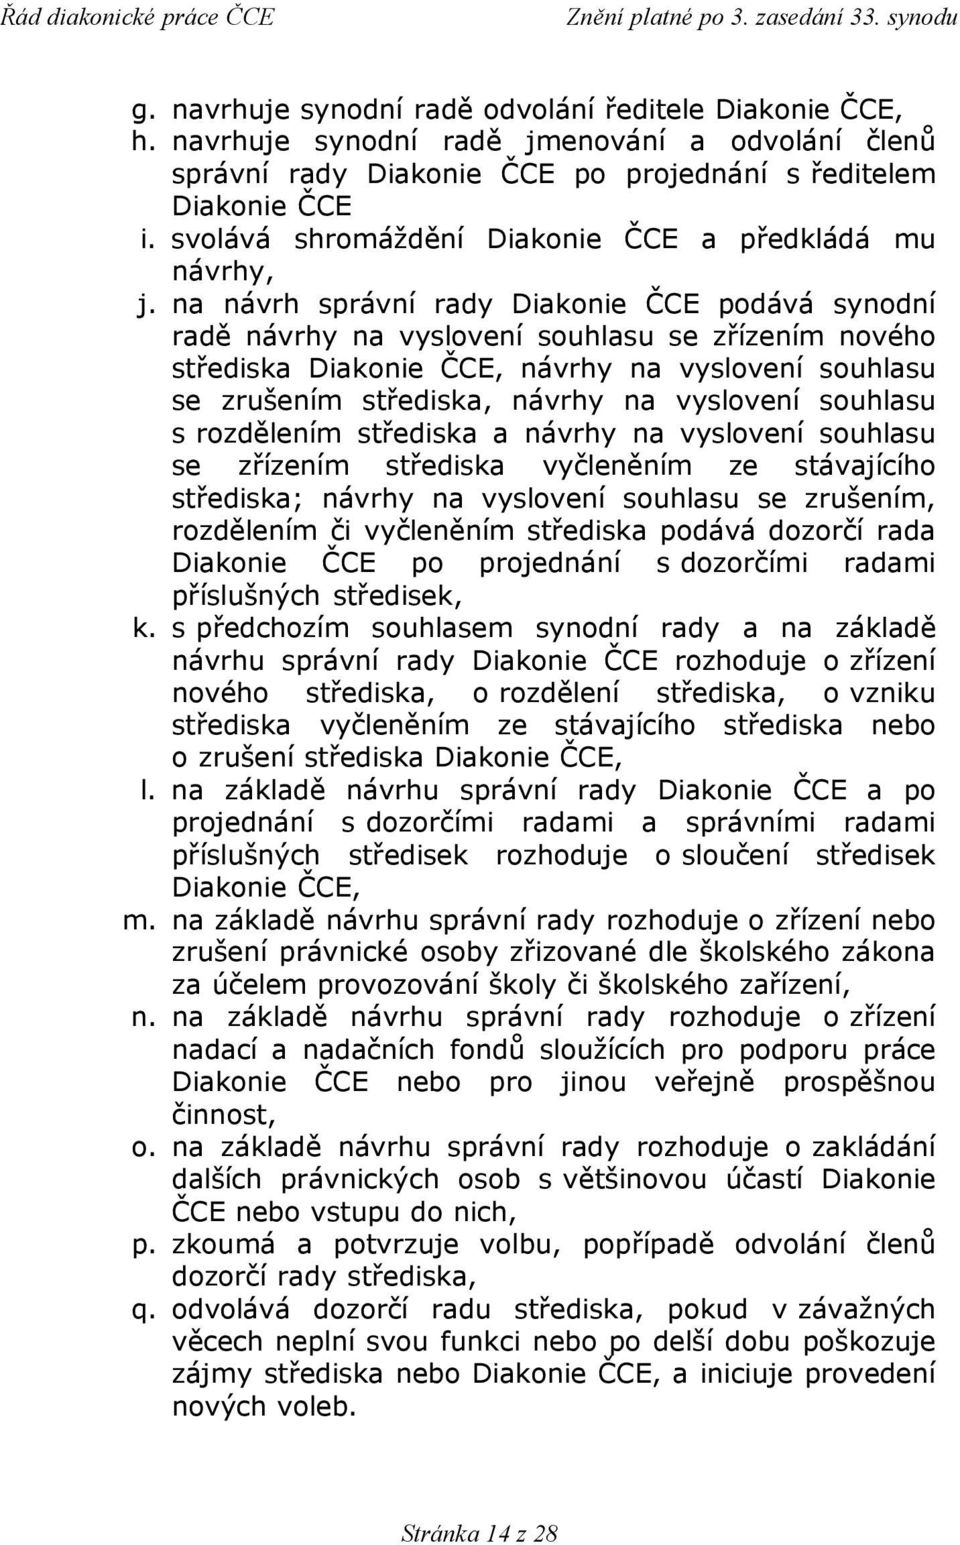 na návrh správní rady Diakonie ČCE podává synodní radě návrhy na vyslovení souhlasu se zřízením nového střediska Diakonie ČCE, návrhy na vyslovení souhlasu se zrušením střediska, návrhy na vyslovení